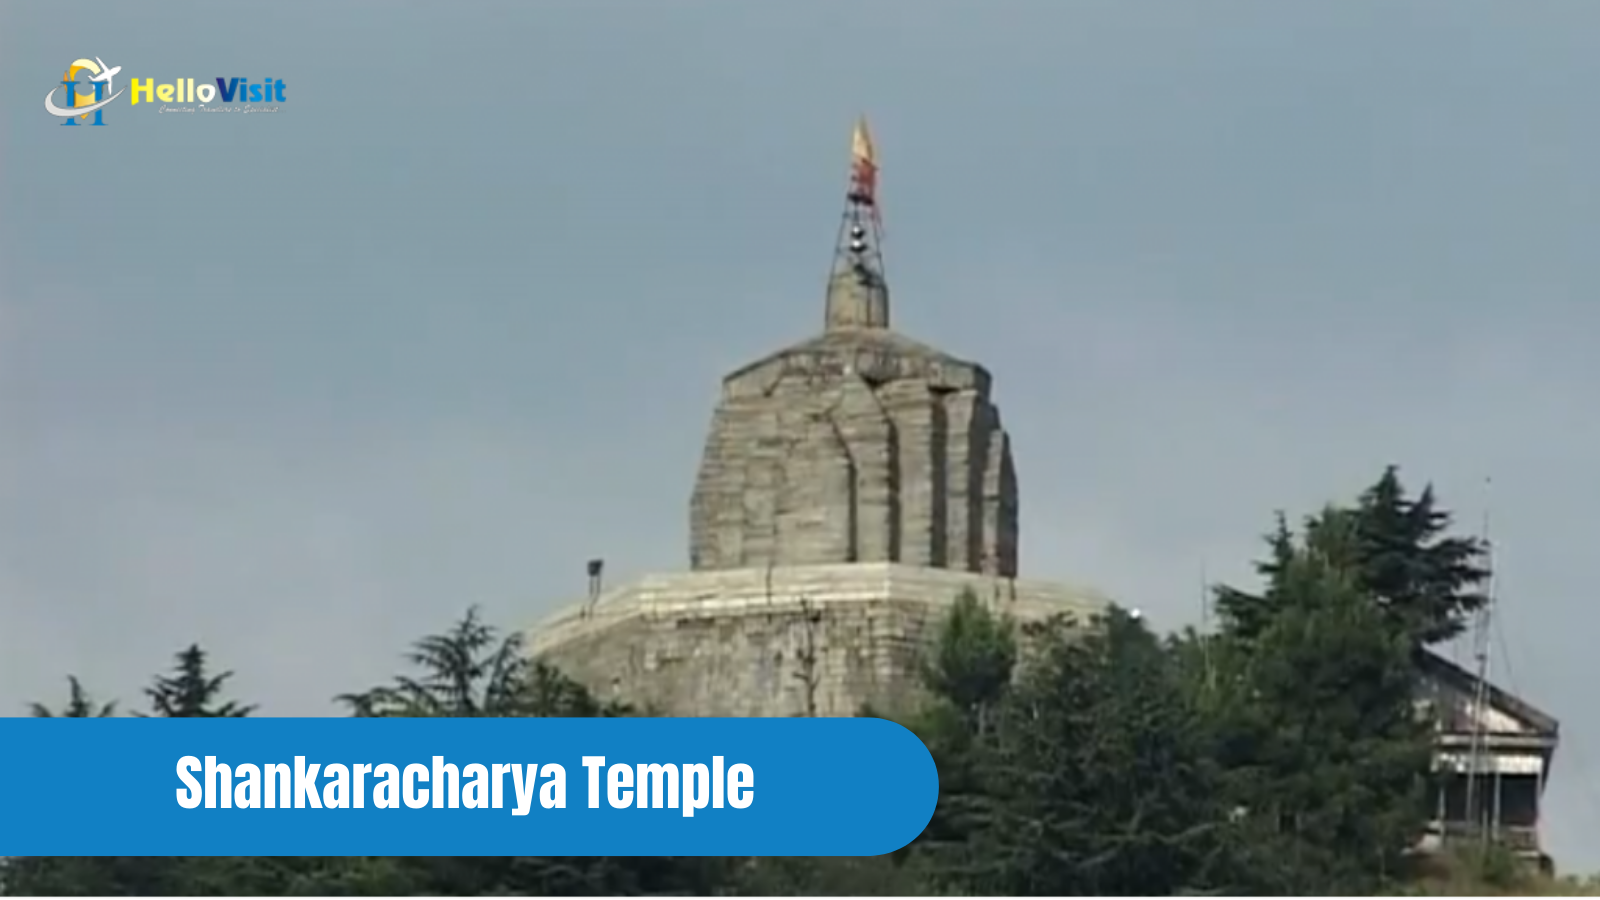 Shankaracharya Temple, Srinagar